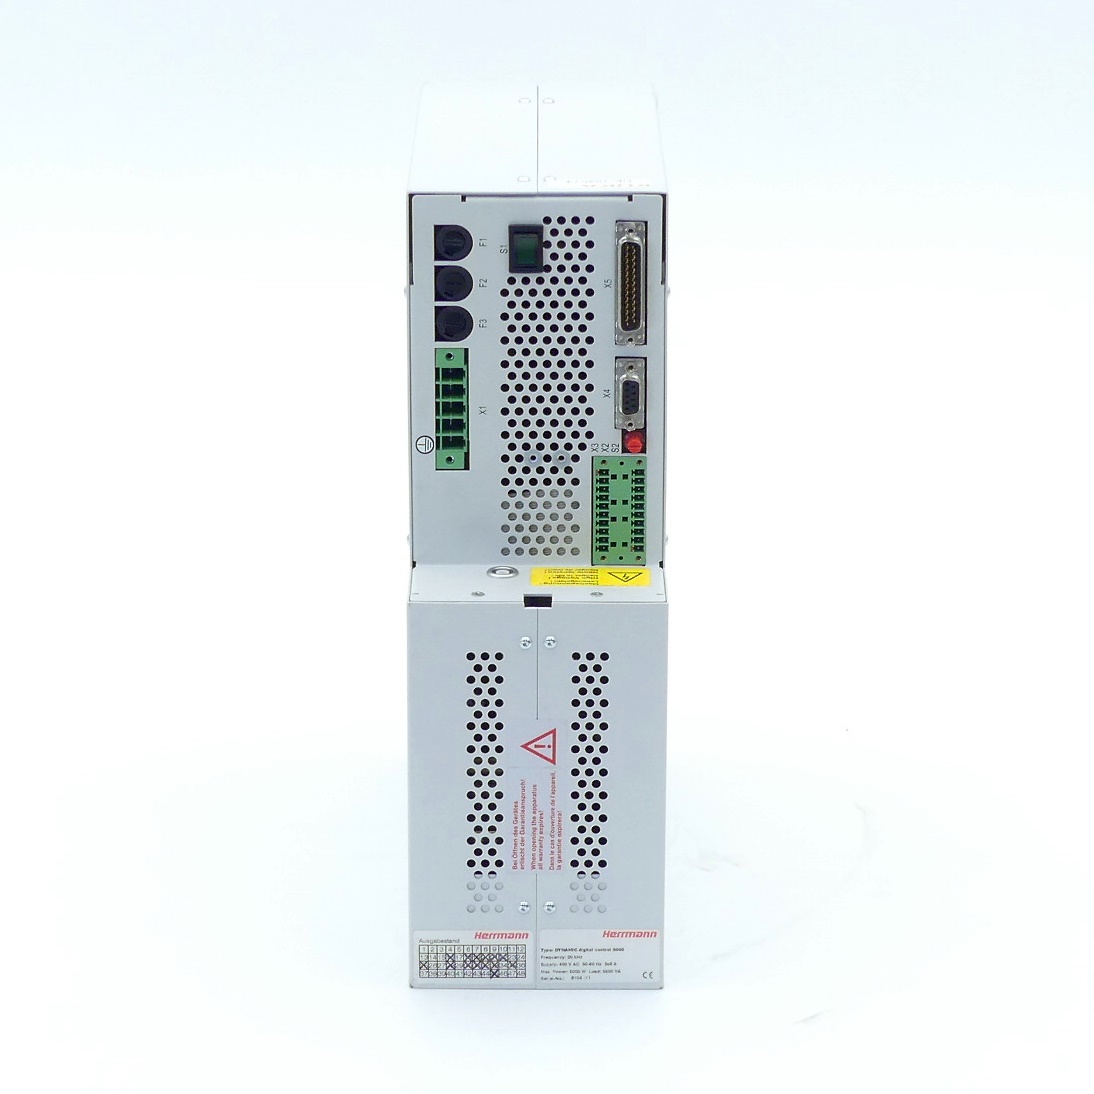 Ultraschall-Generator 20 kHz DYNAMIC digital control 5000 